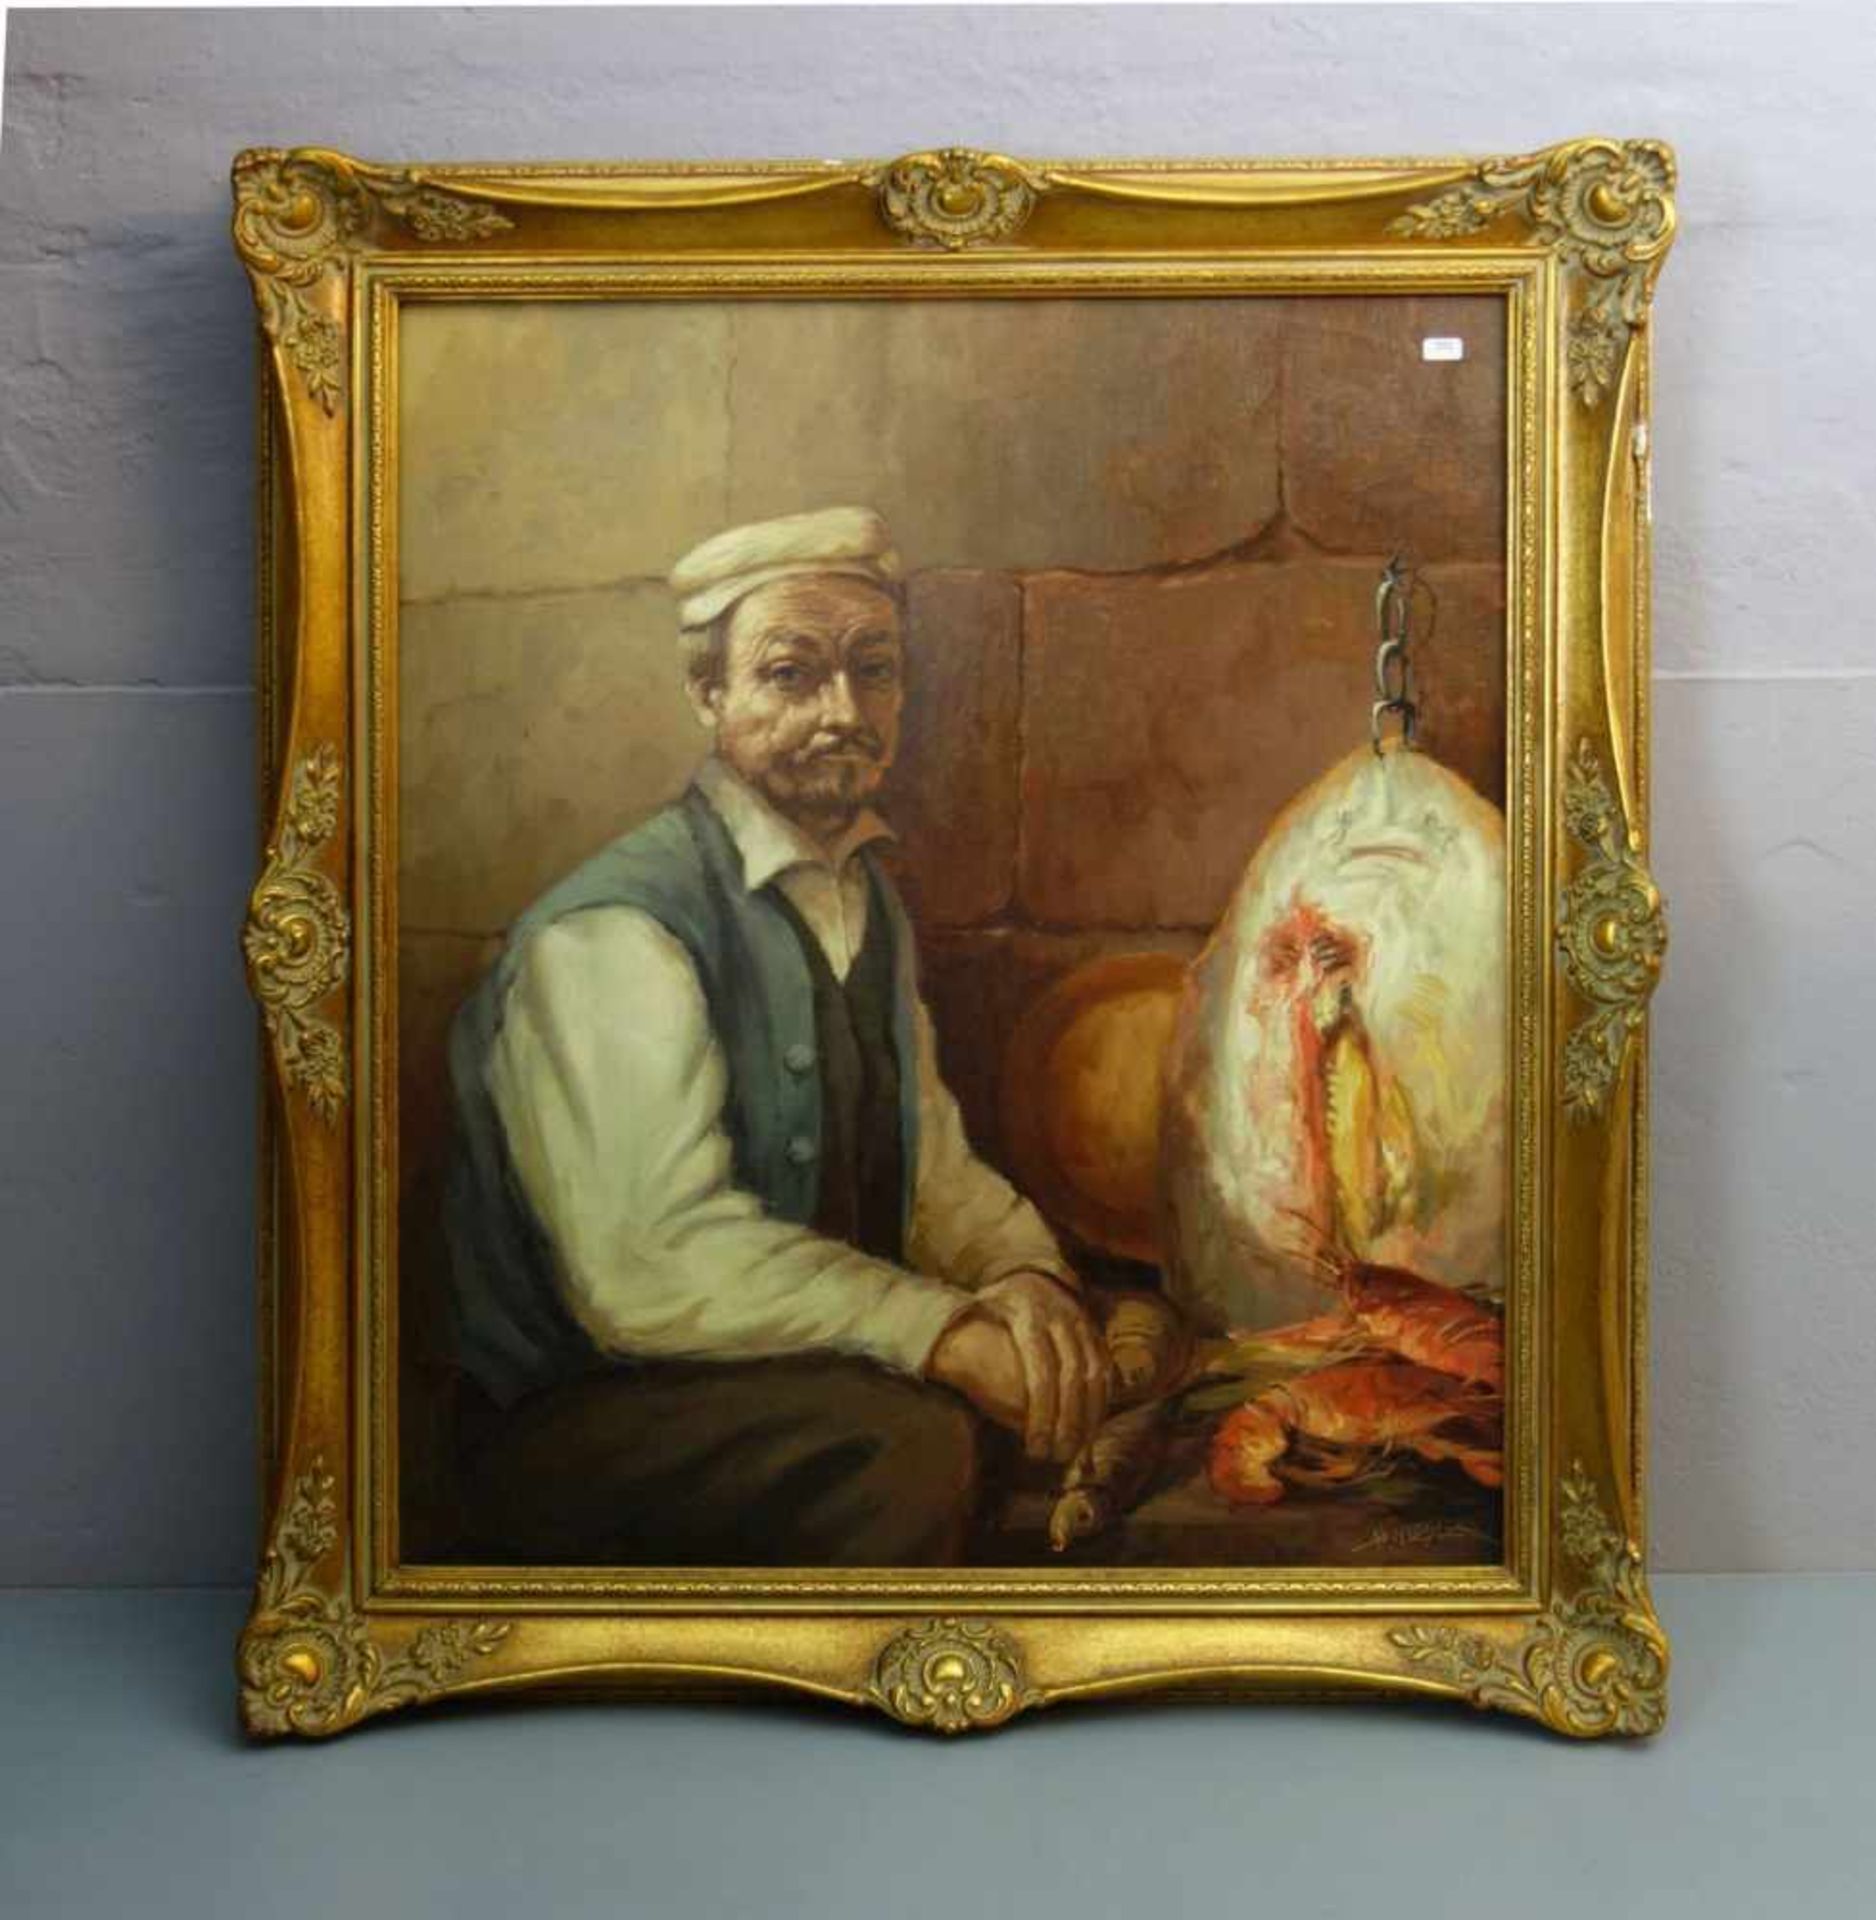 MIESLER, HORST (geb. 1934 in Breslau), Gemälde / painting: "Der Fischhändler", Öl auf Leinwand / oil